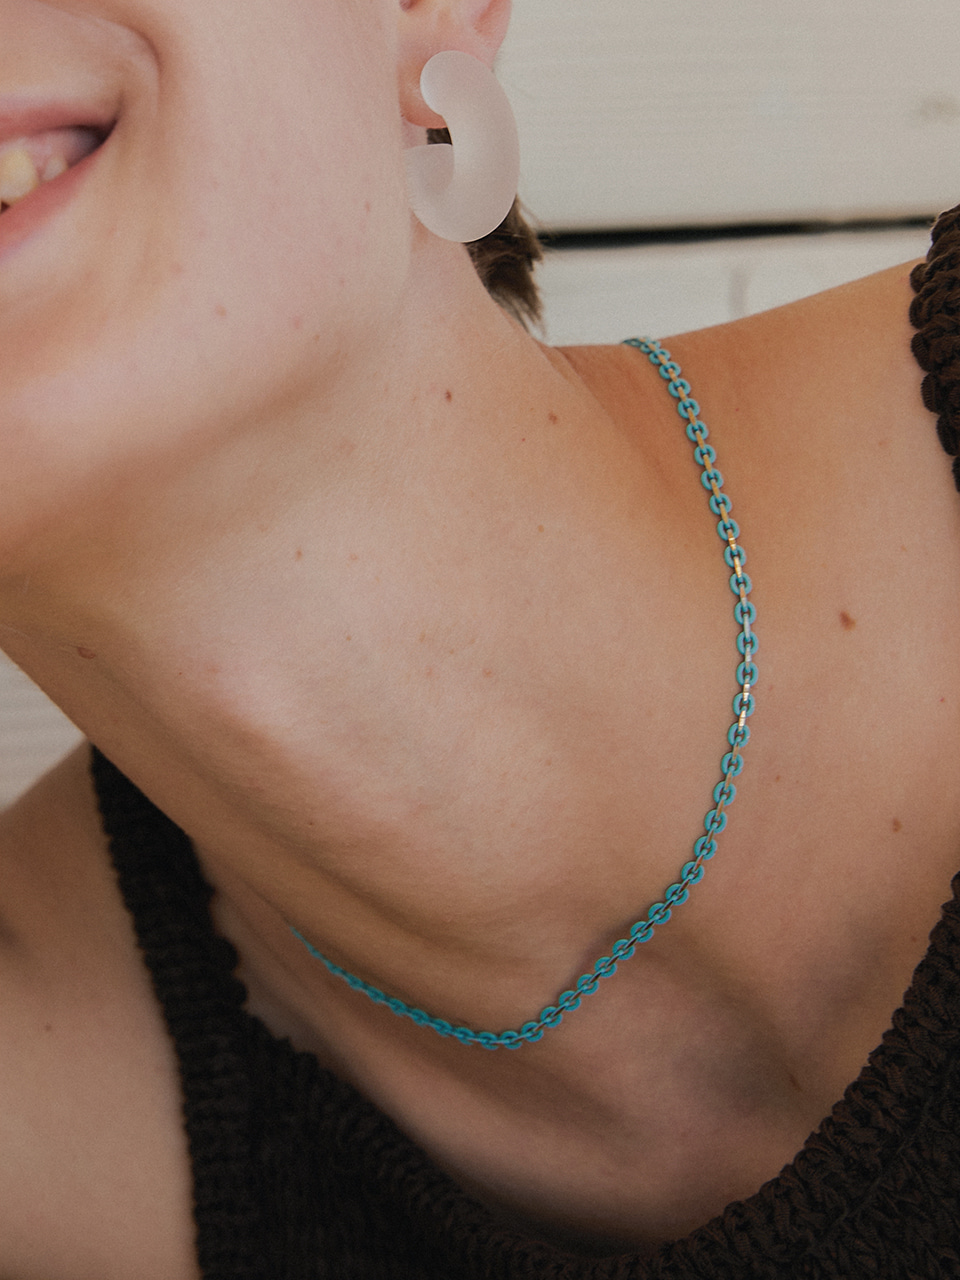 graze necklace - blue